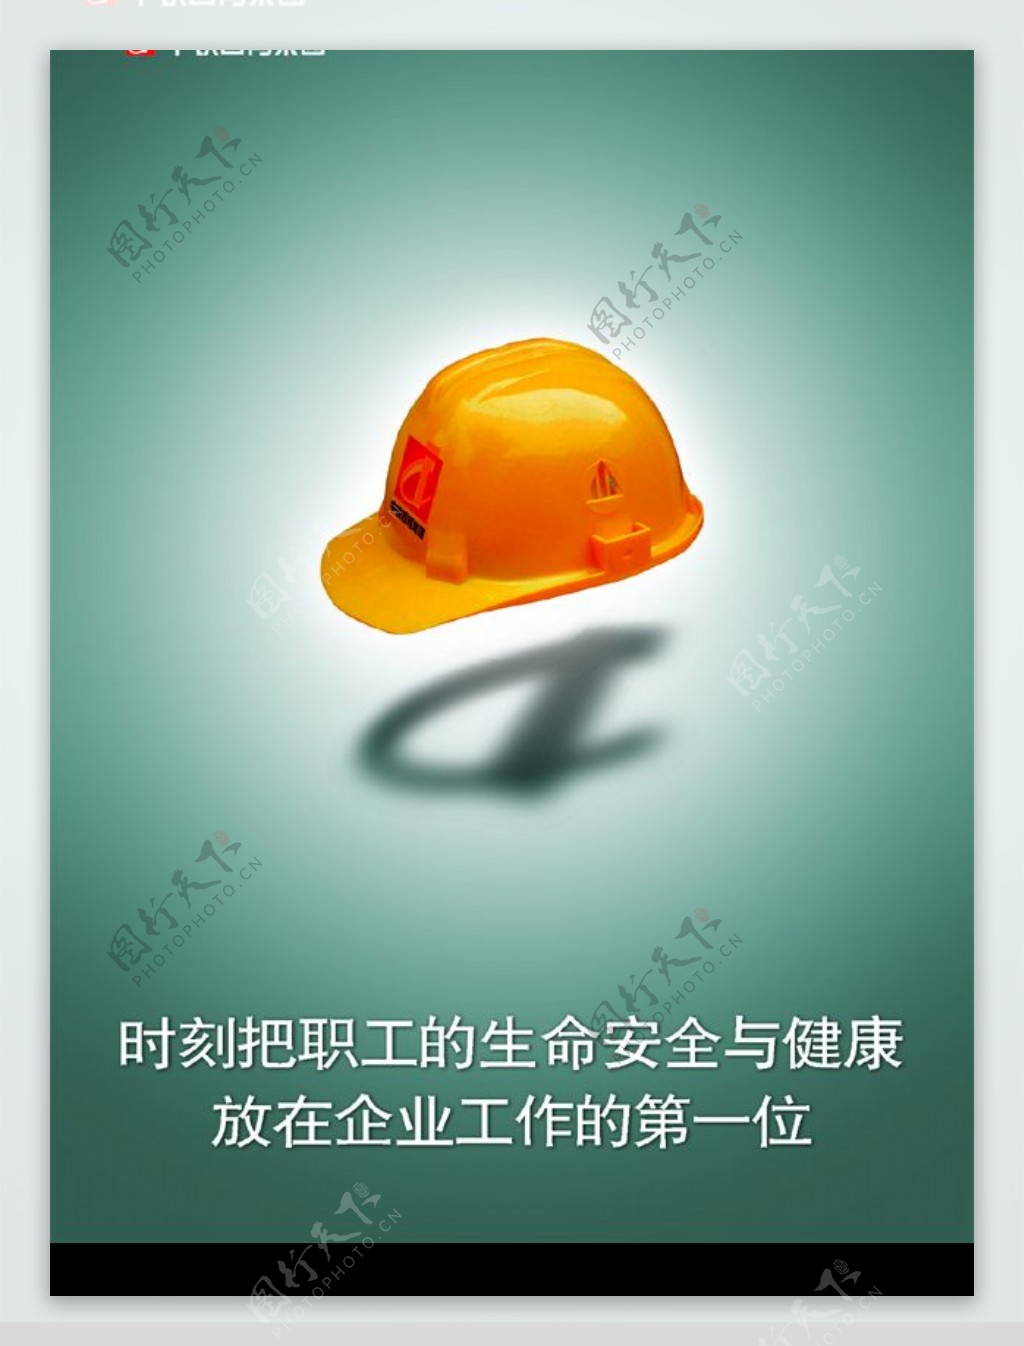 中国中铁常用企业文化画安全文化宣传